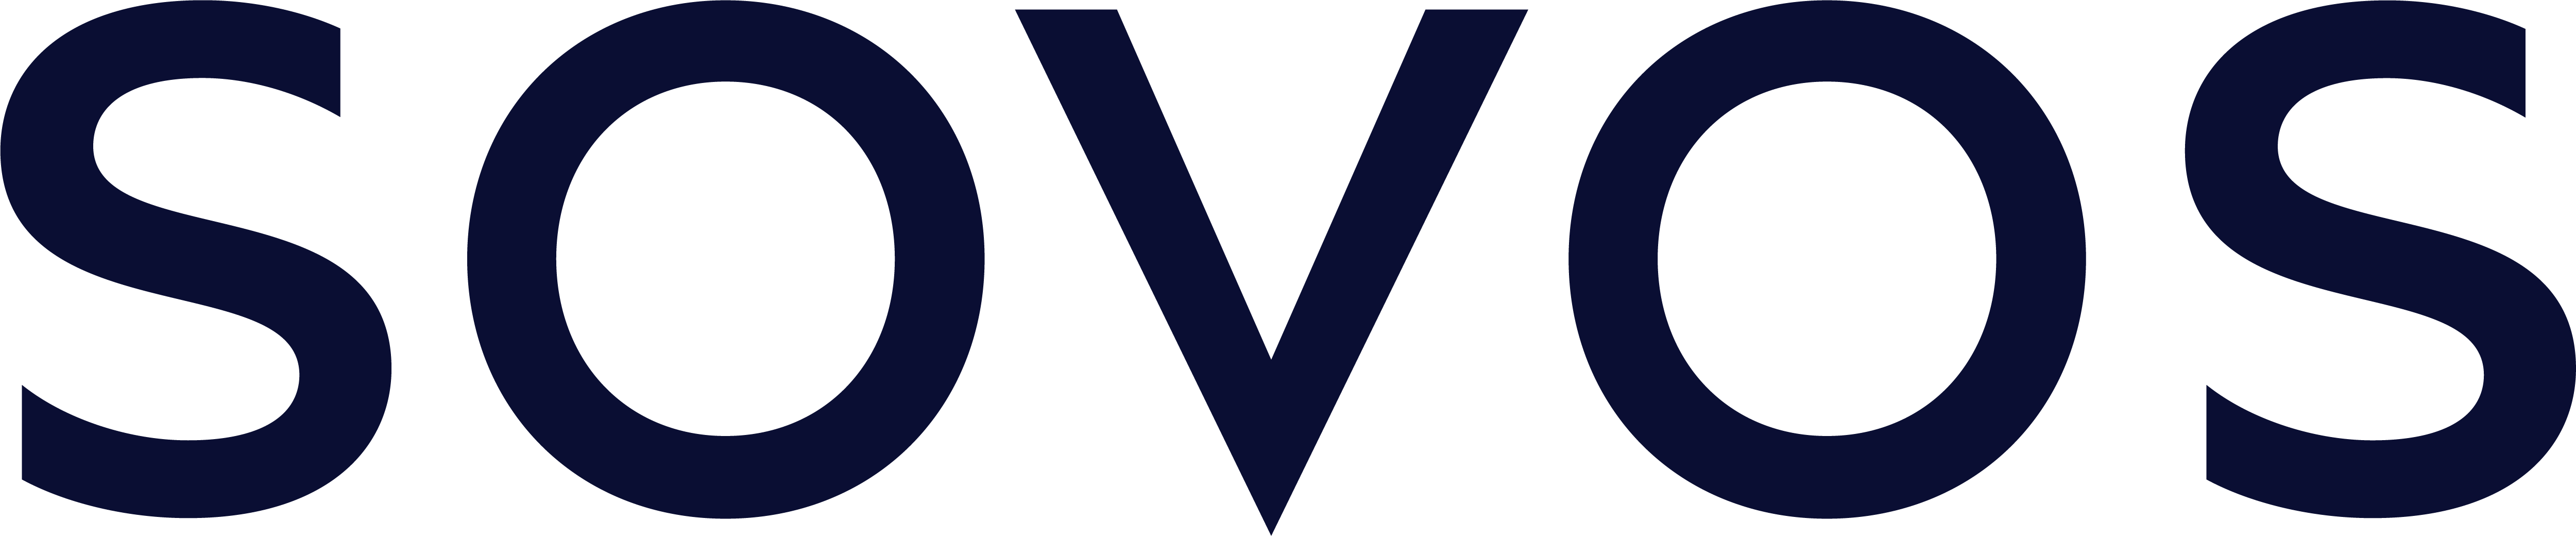 SOVOS Marketplace logo